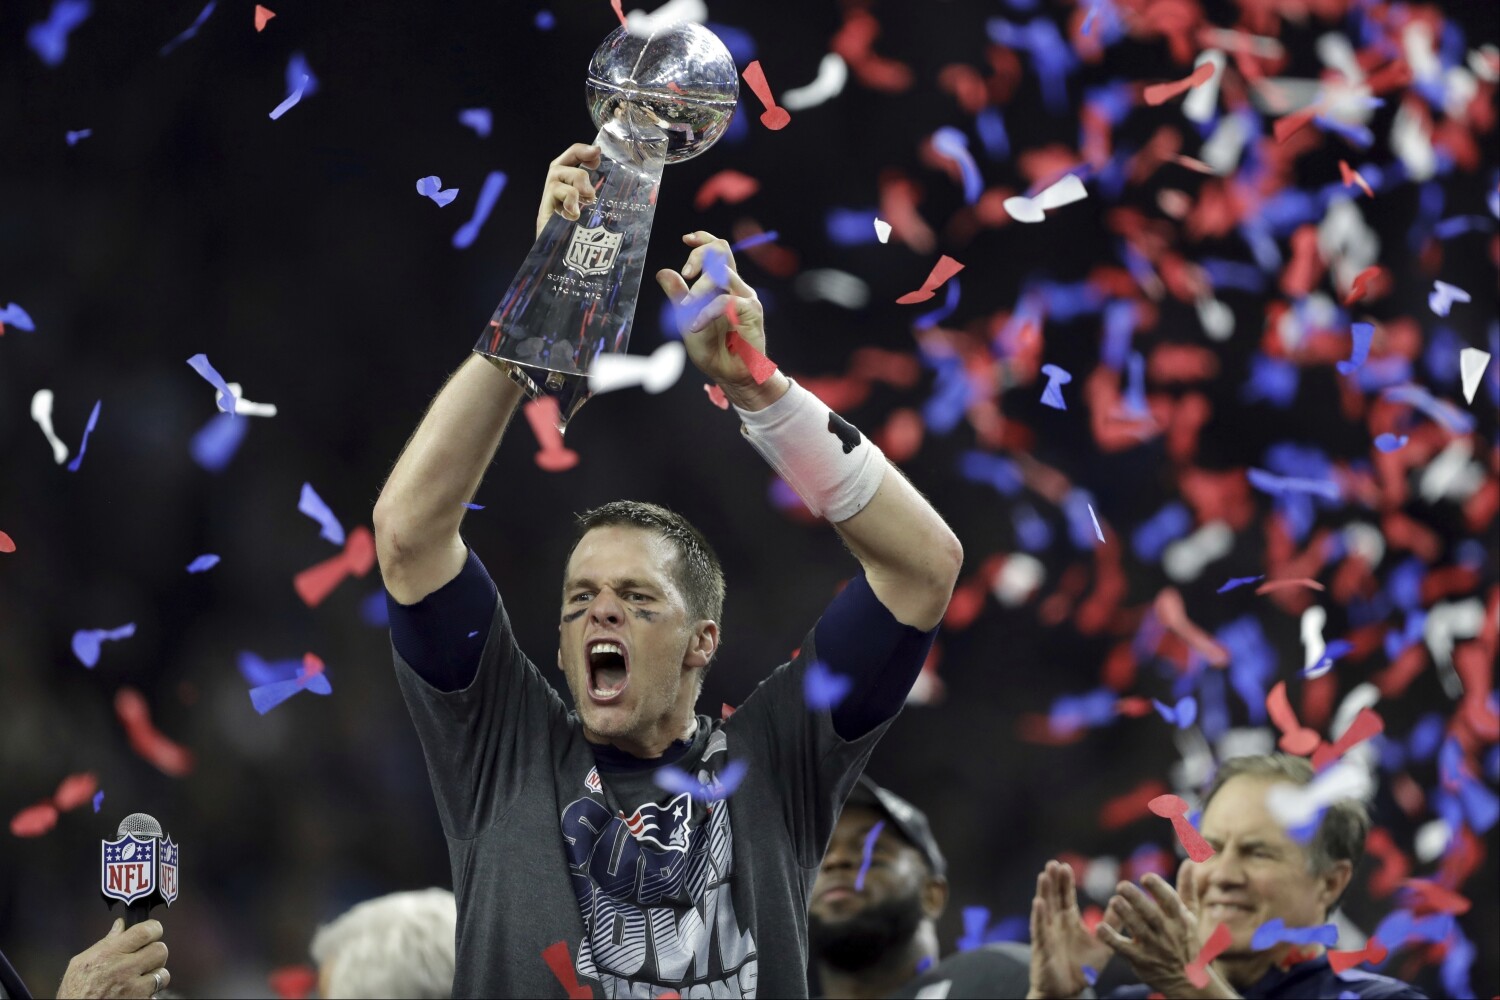 Patriots Super Bowl yüzüğü dolandırıcılığı için hapis cezasına çarptırılan adam